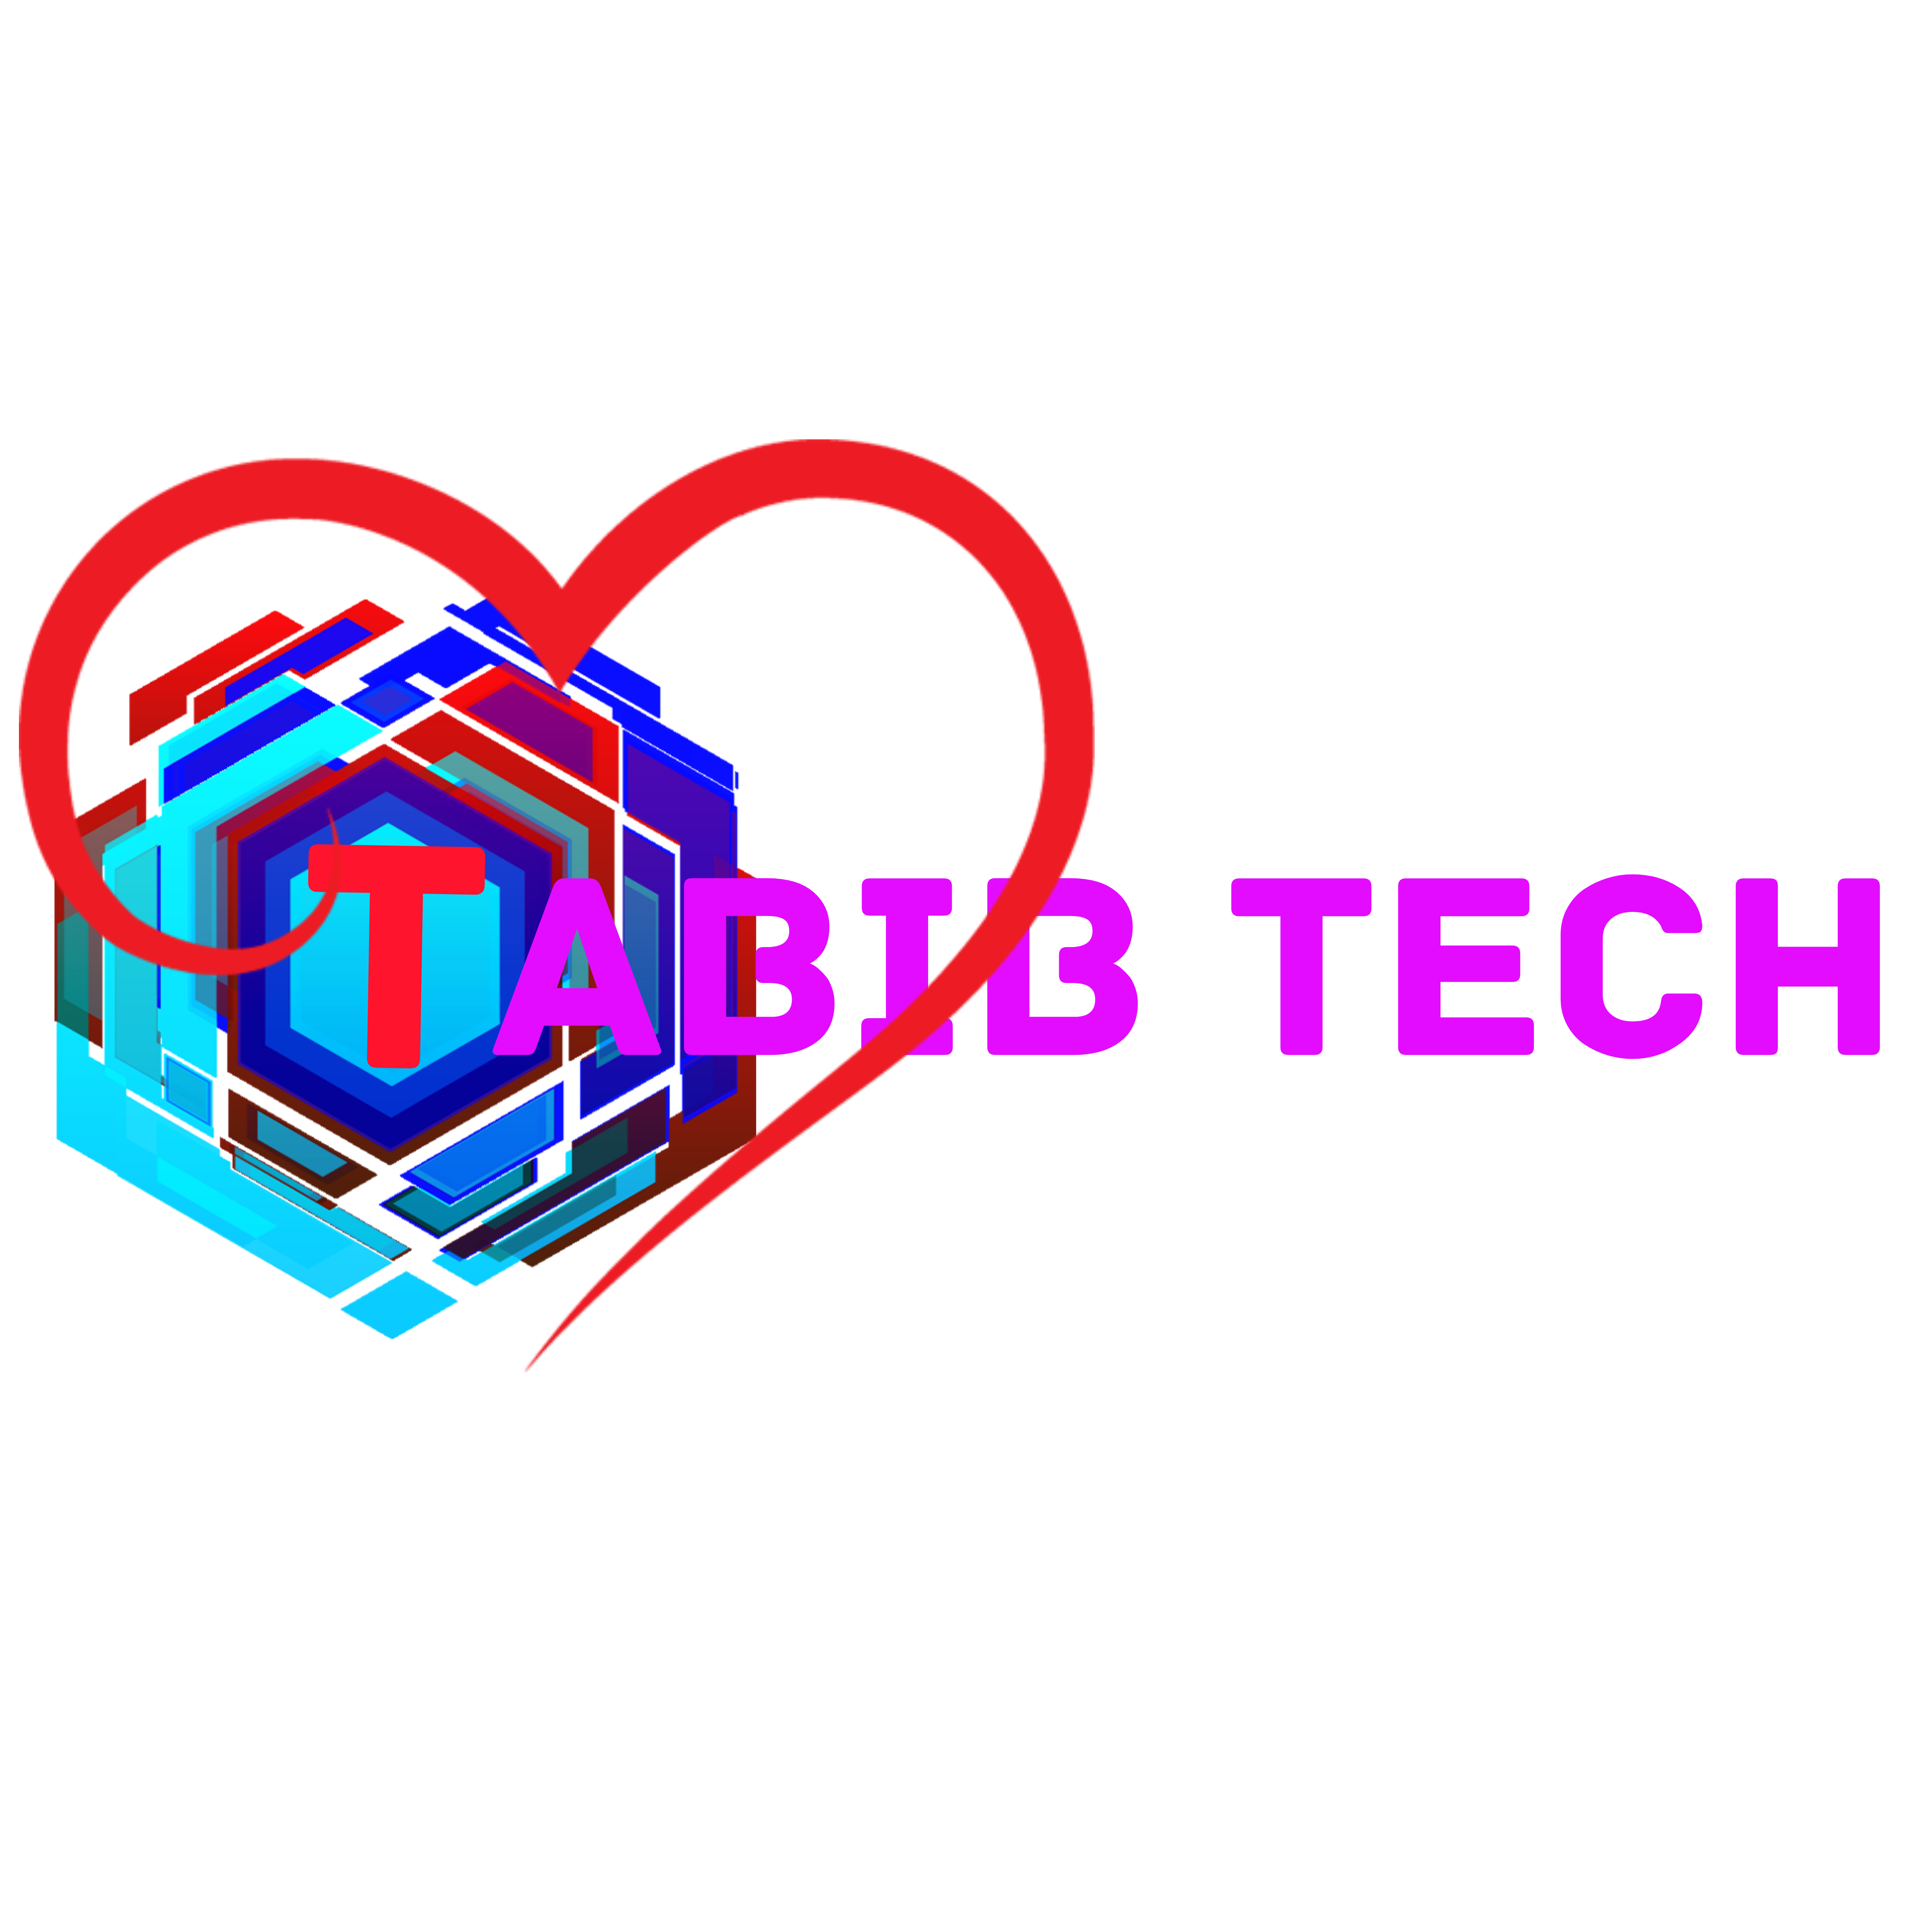 طبیب تِک TabibTech